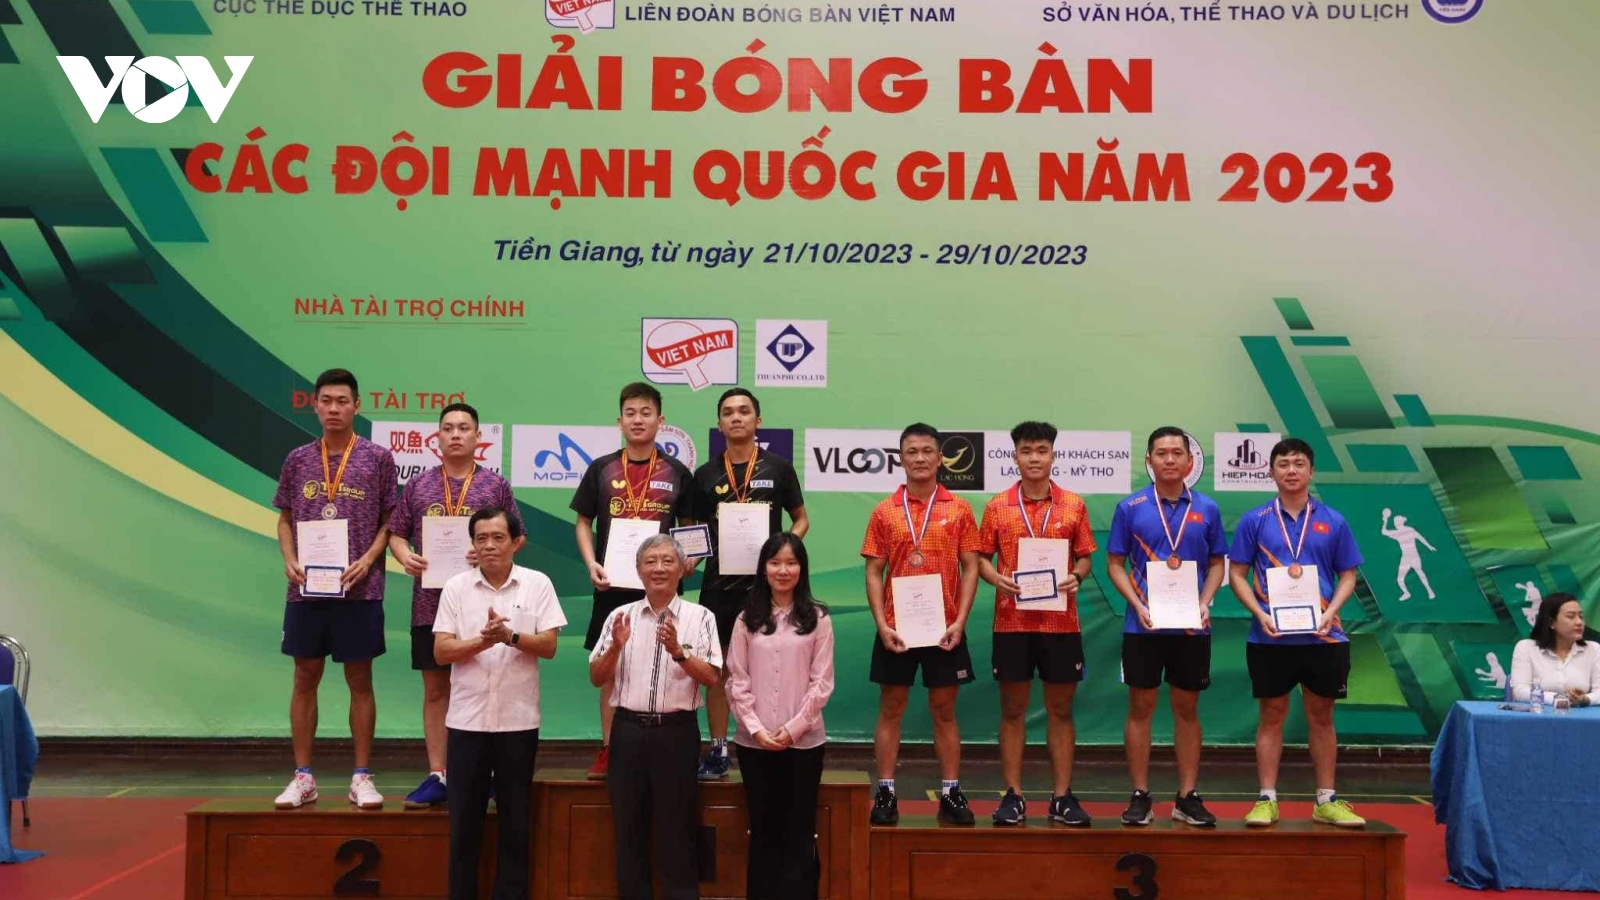 Bóng bàn Hà Nội T&T giành 2 HCV tại giải các đội mạnh quốc gia